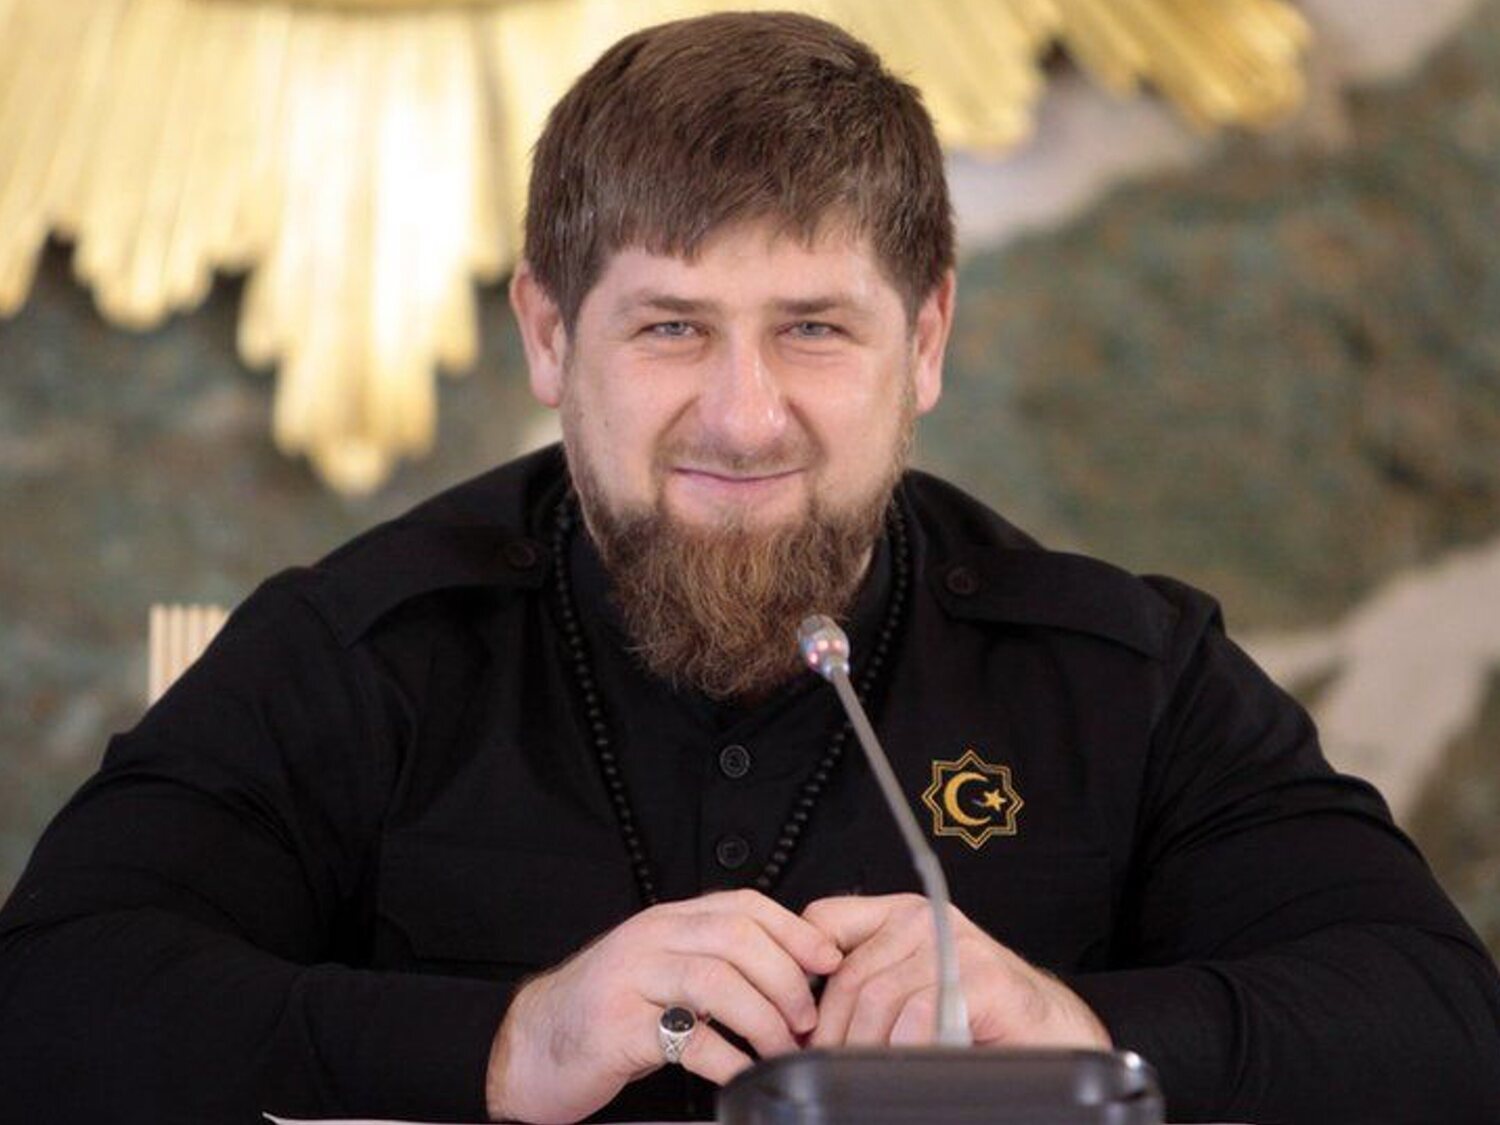 Chechenia prohíbe la música considerada demasiado rápida o lenta